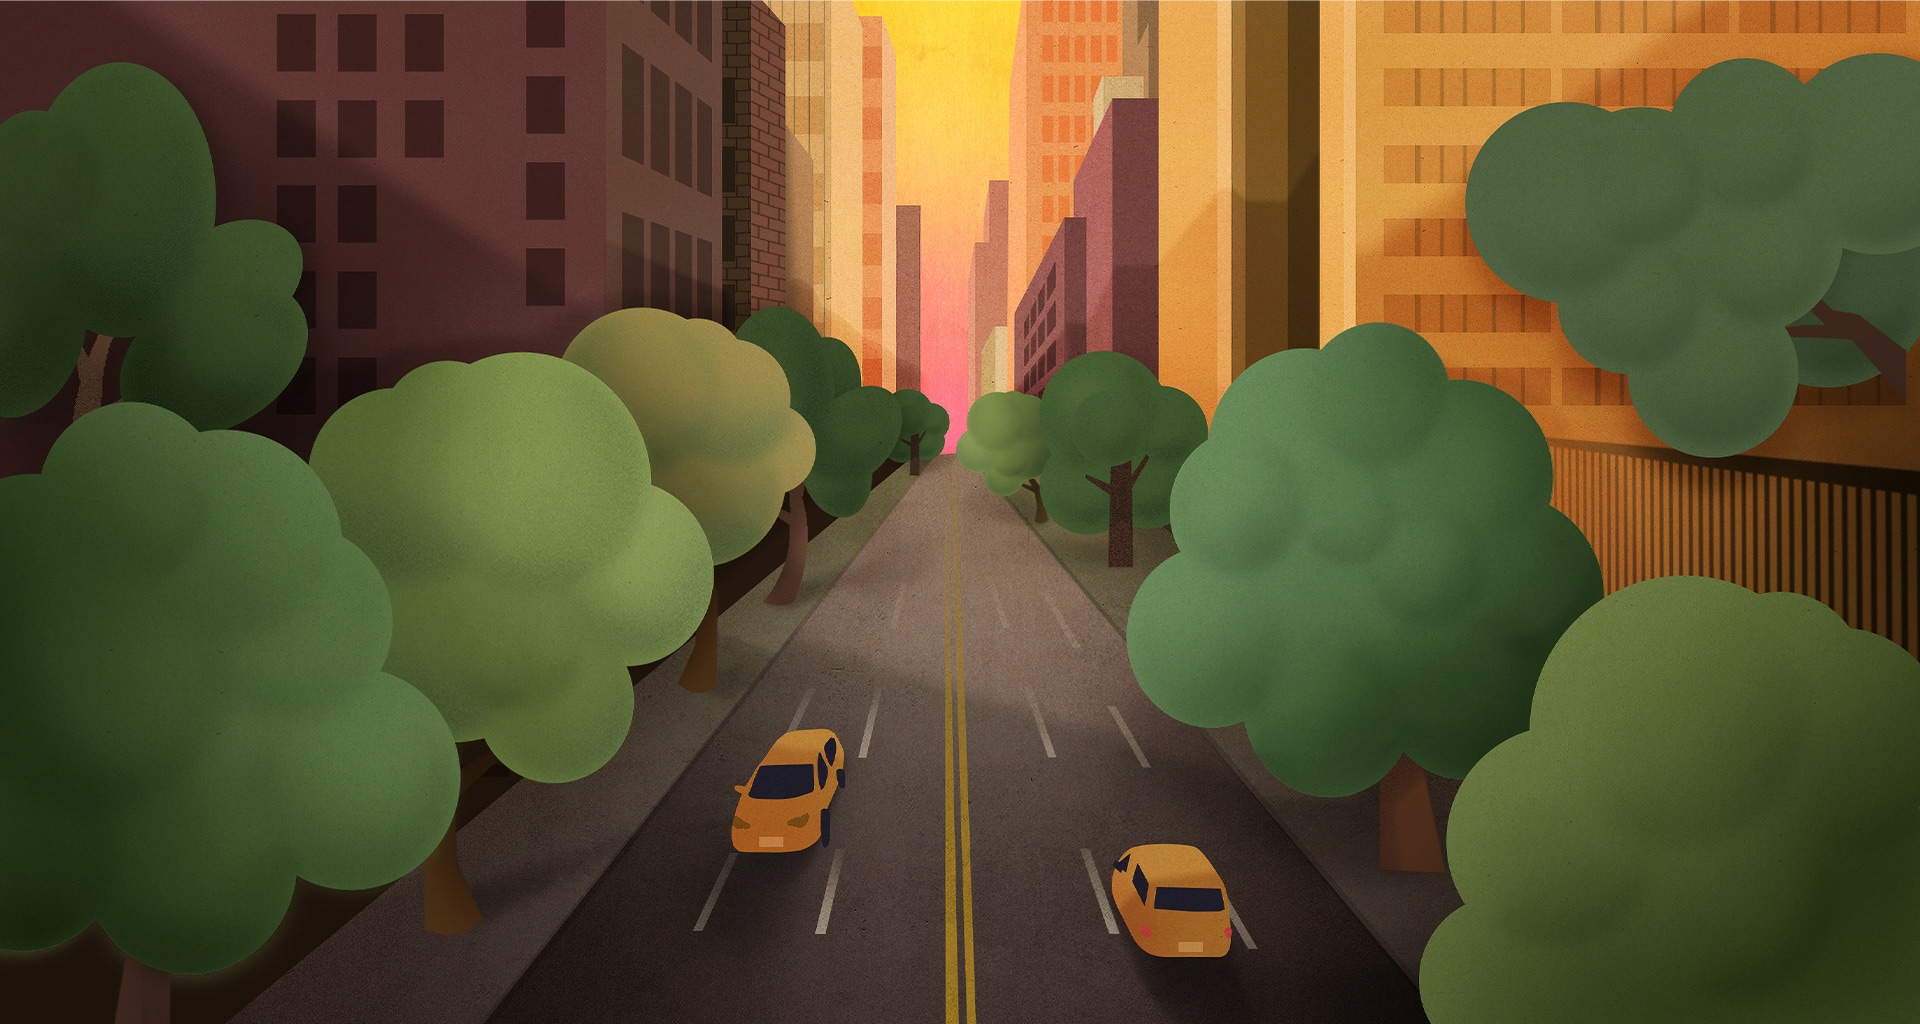 Hình minh họa kiểu bút chì màu của một con đường thành phố rợp bóng cây với những chiếc xe chạy qua